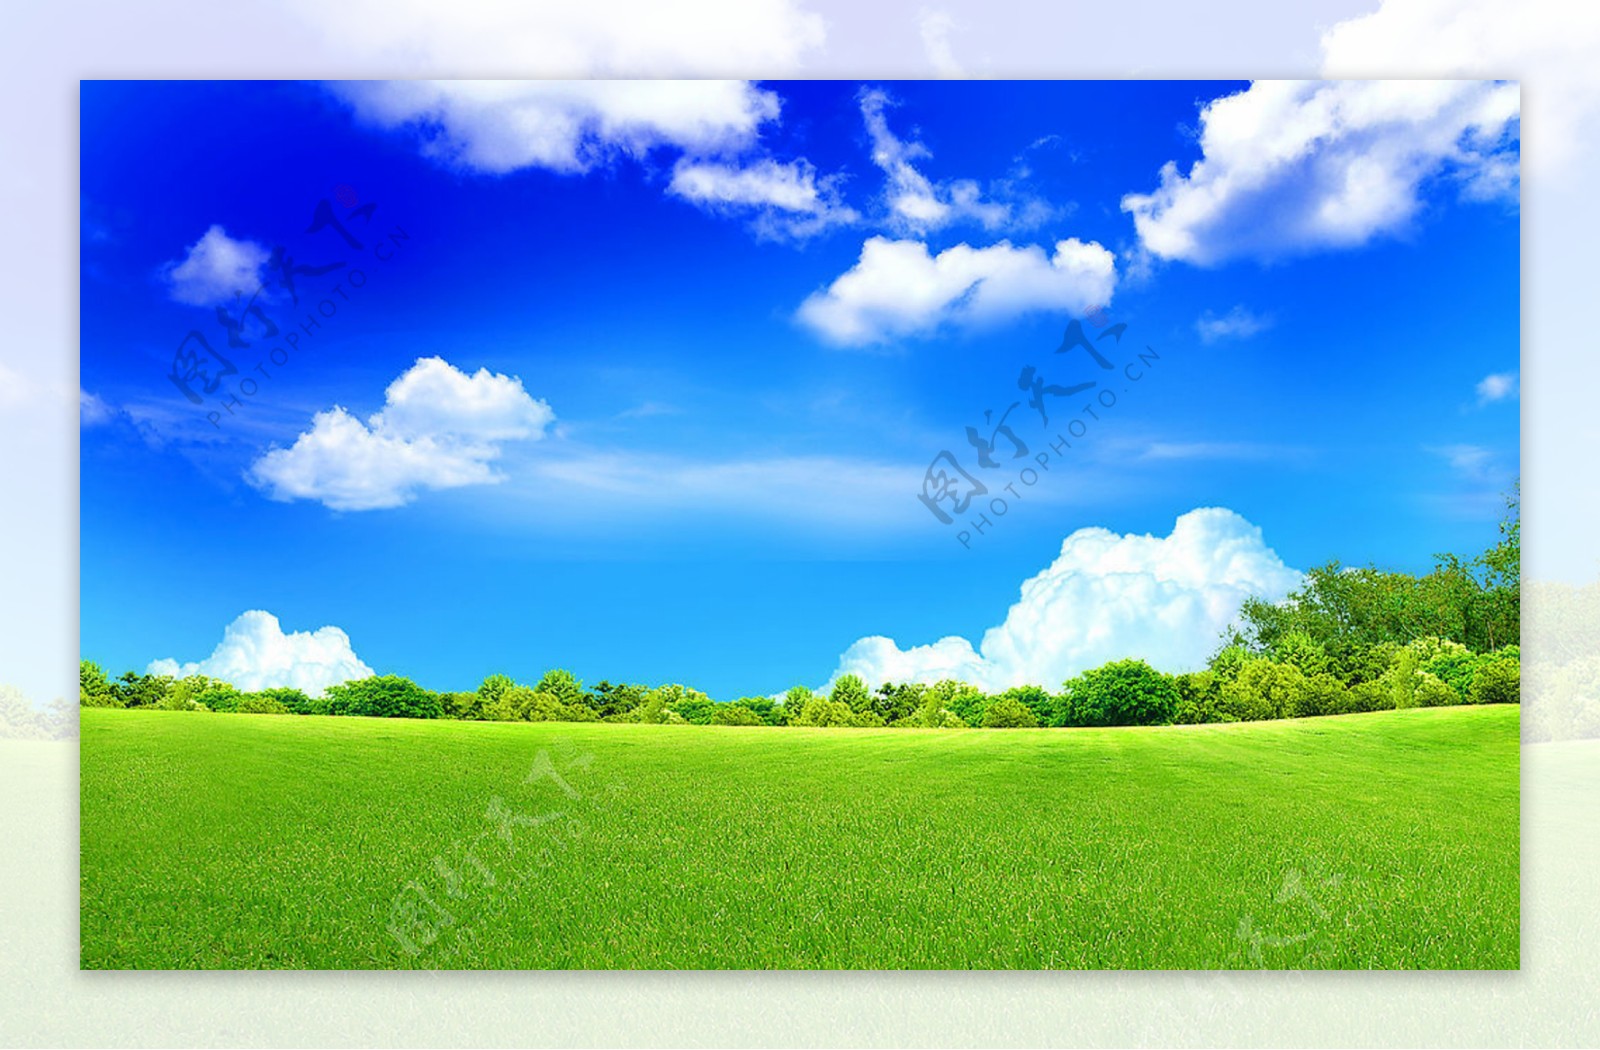 草地蓝天背景图片